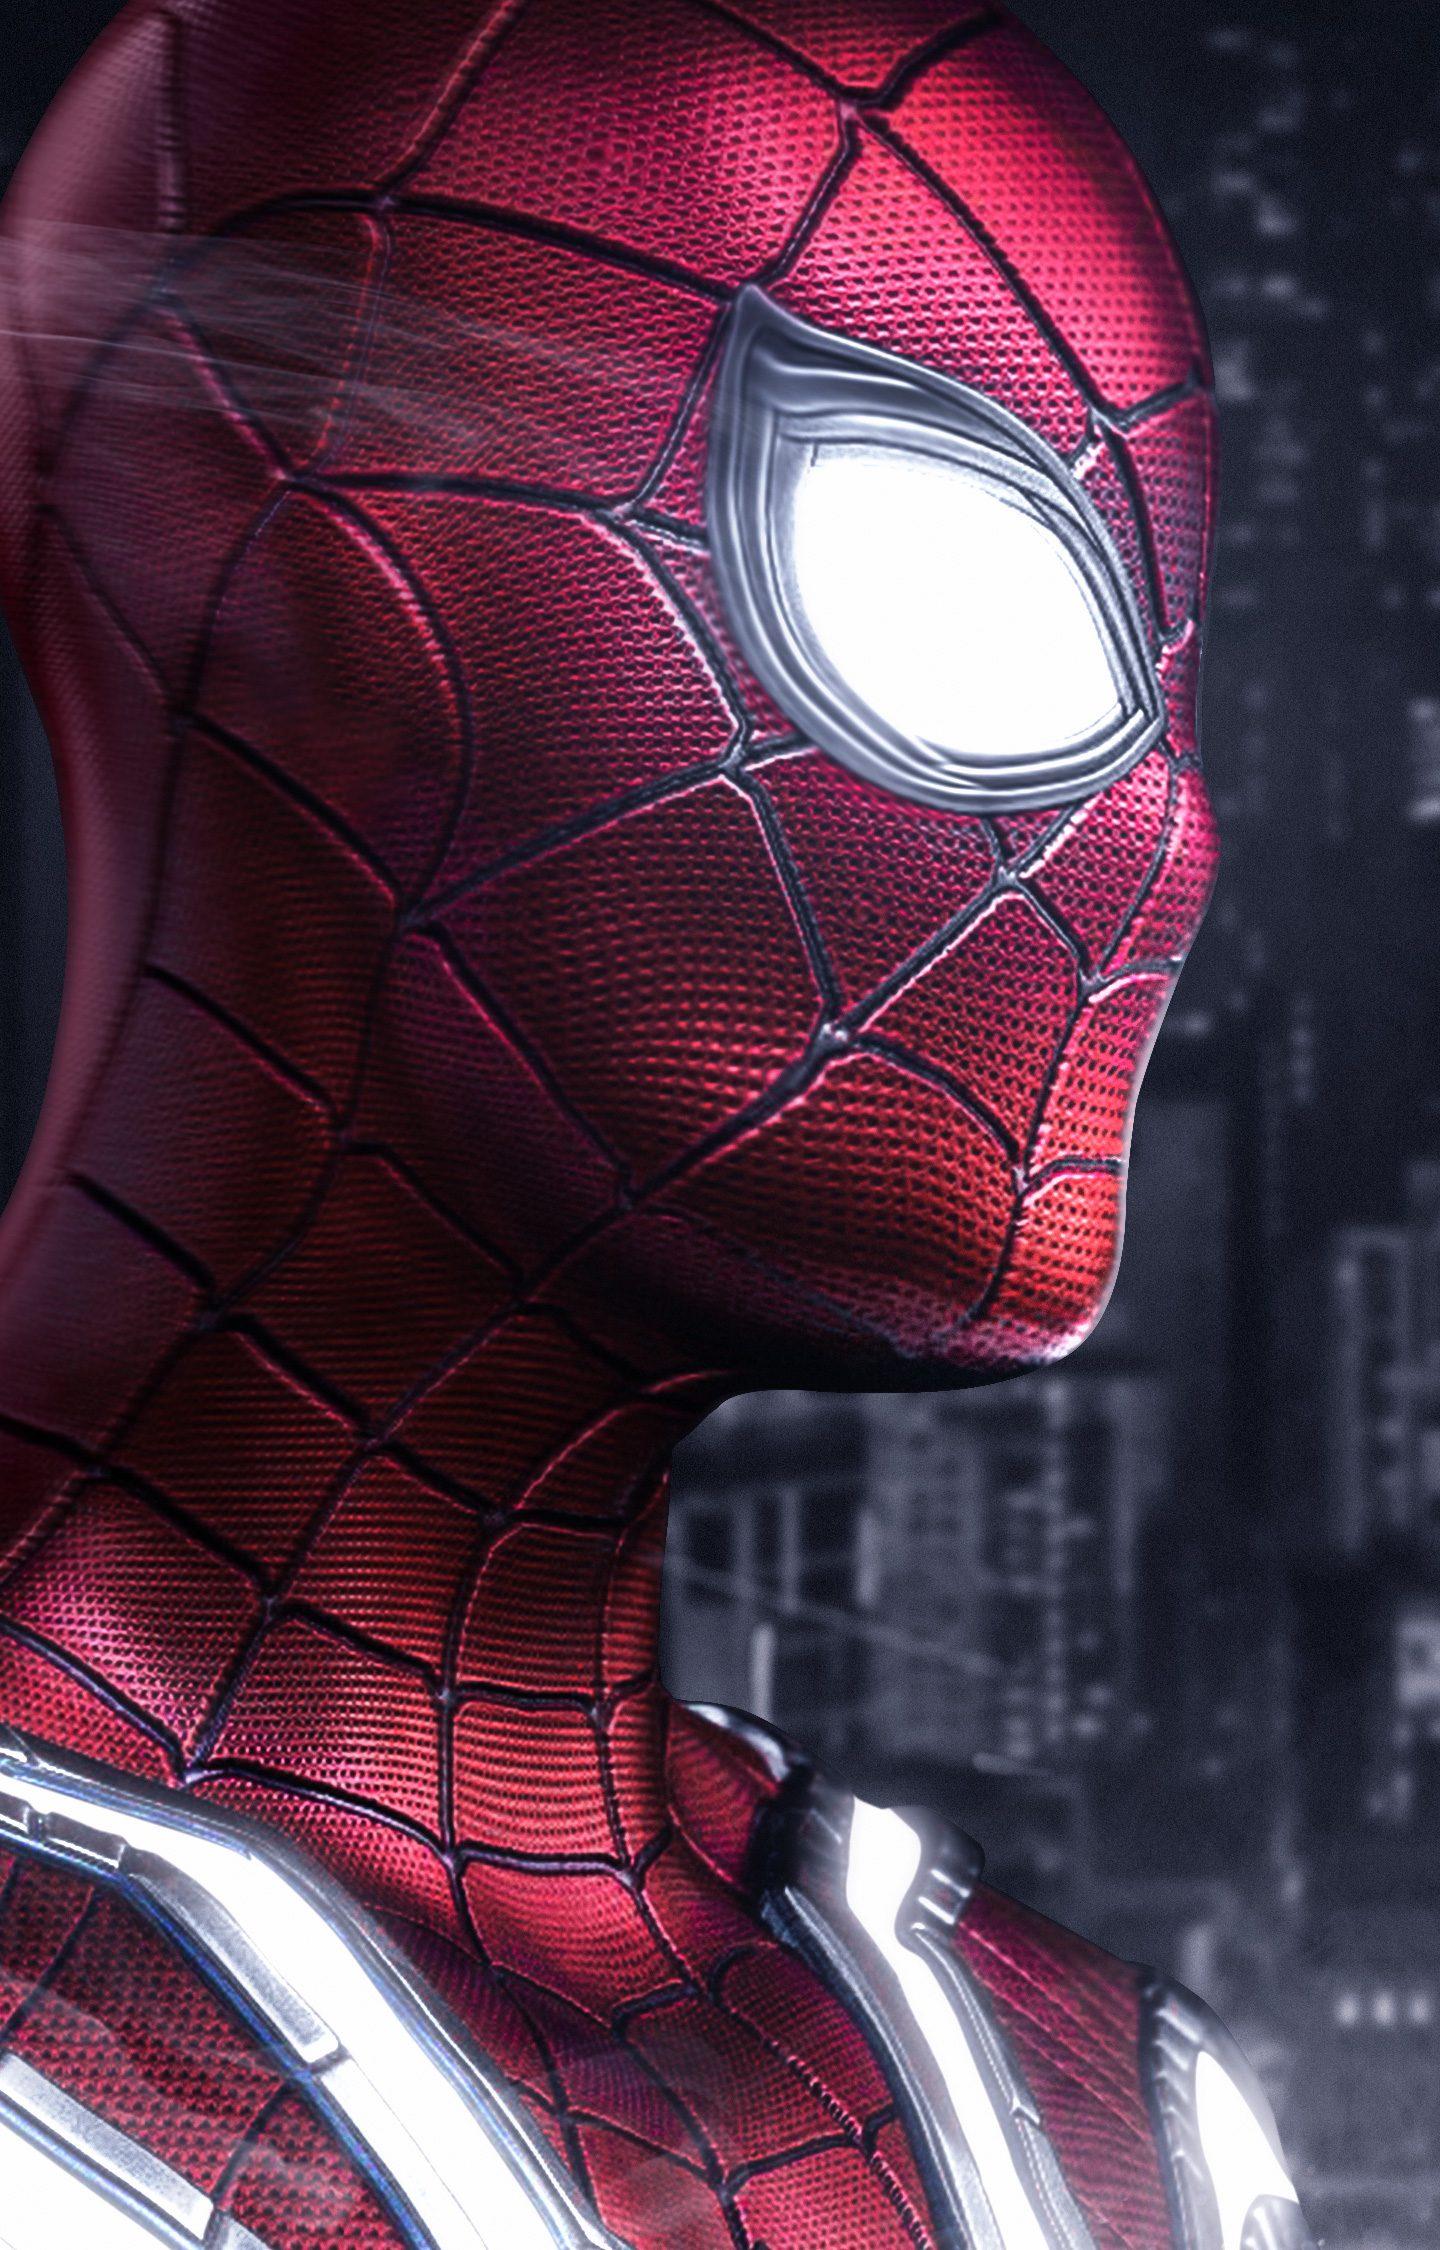 Spiderman Wallpaper 4k For Mobile